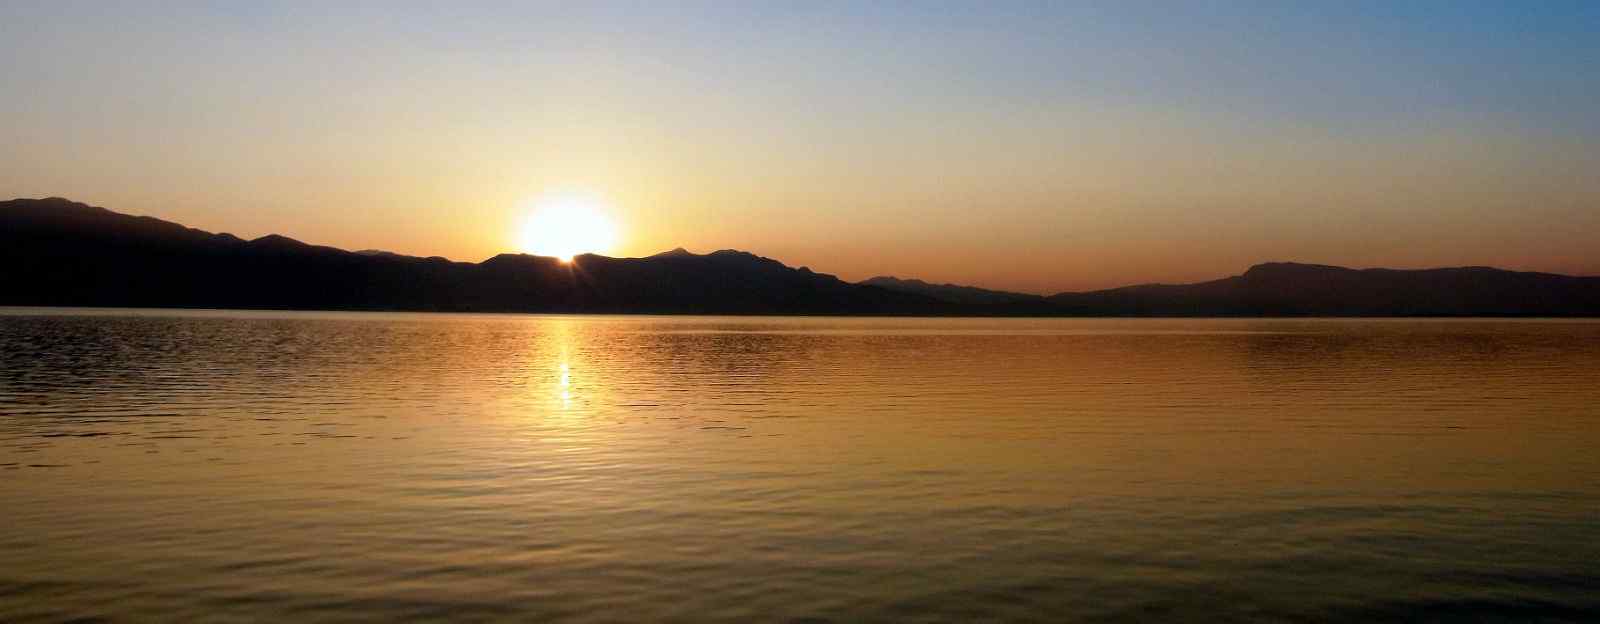 洱海黄昏日落唯美风景图片桌面壁纸